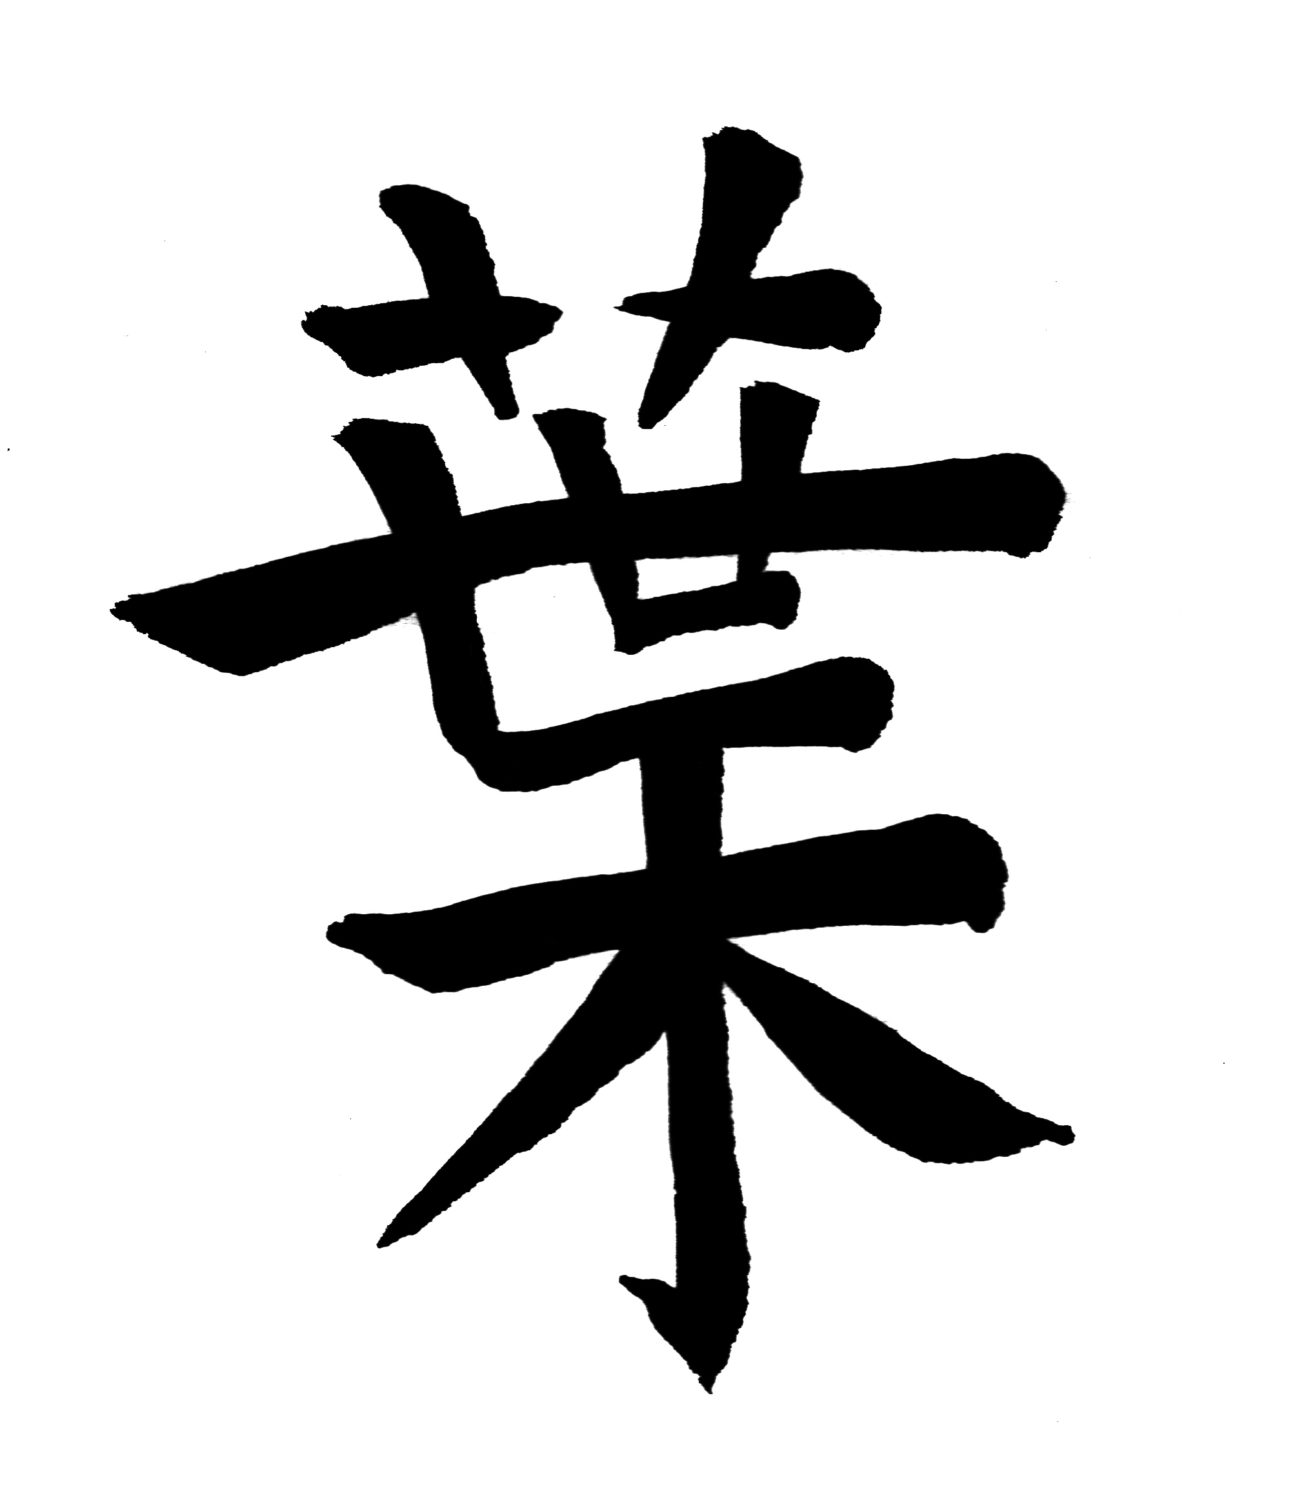 Ideogramma cinese "Foglie"